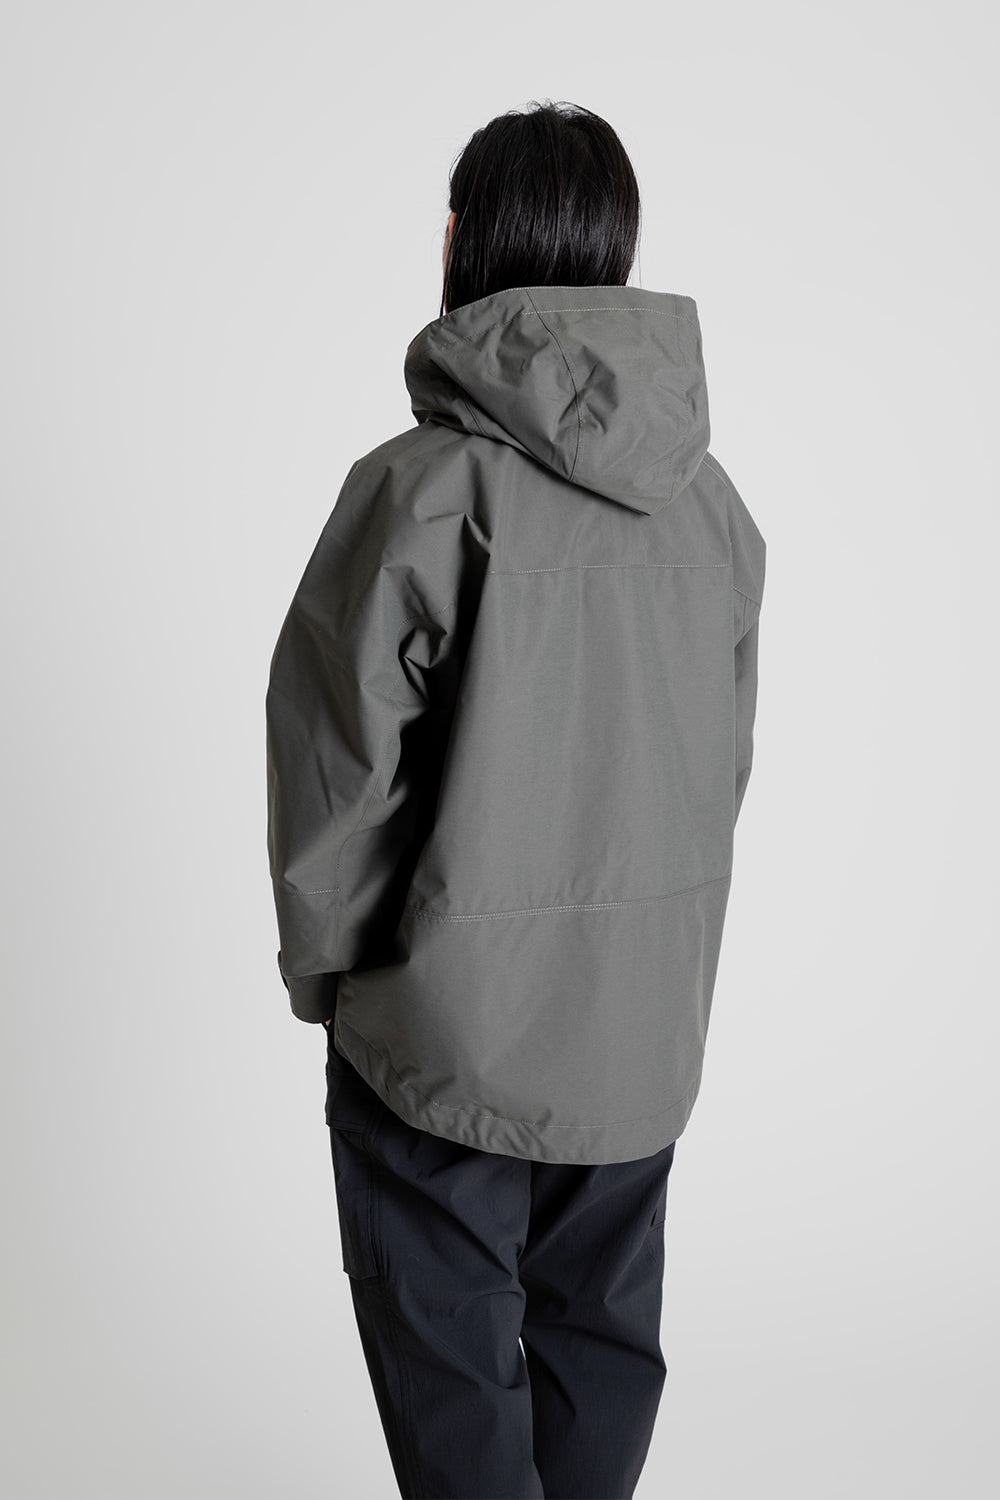 Goldwin Pertex Unlimited 2L Jacket in Khaki Gray